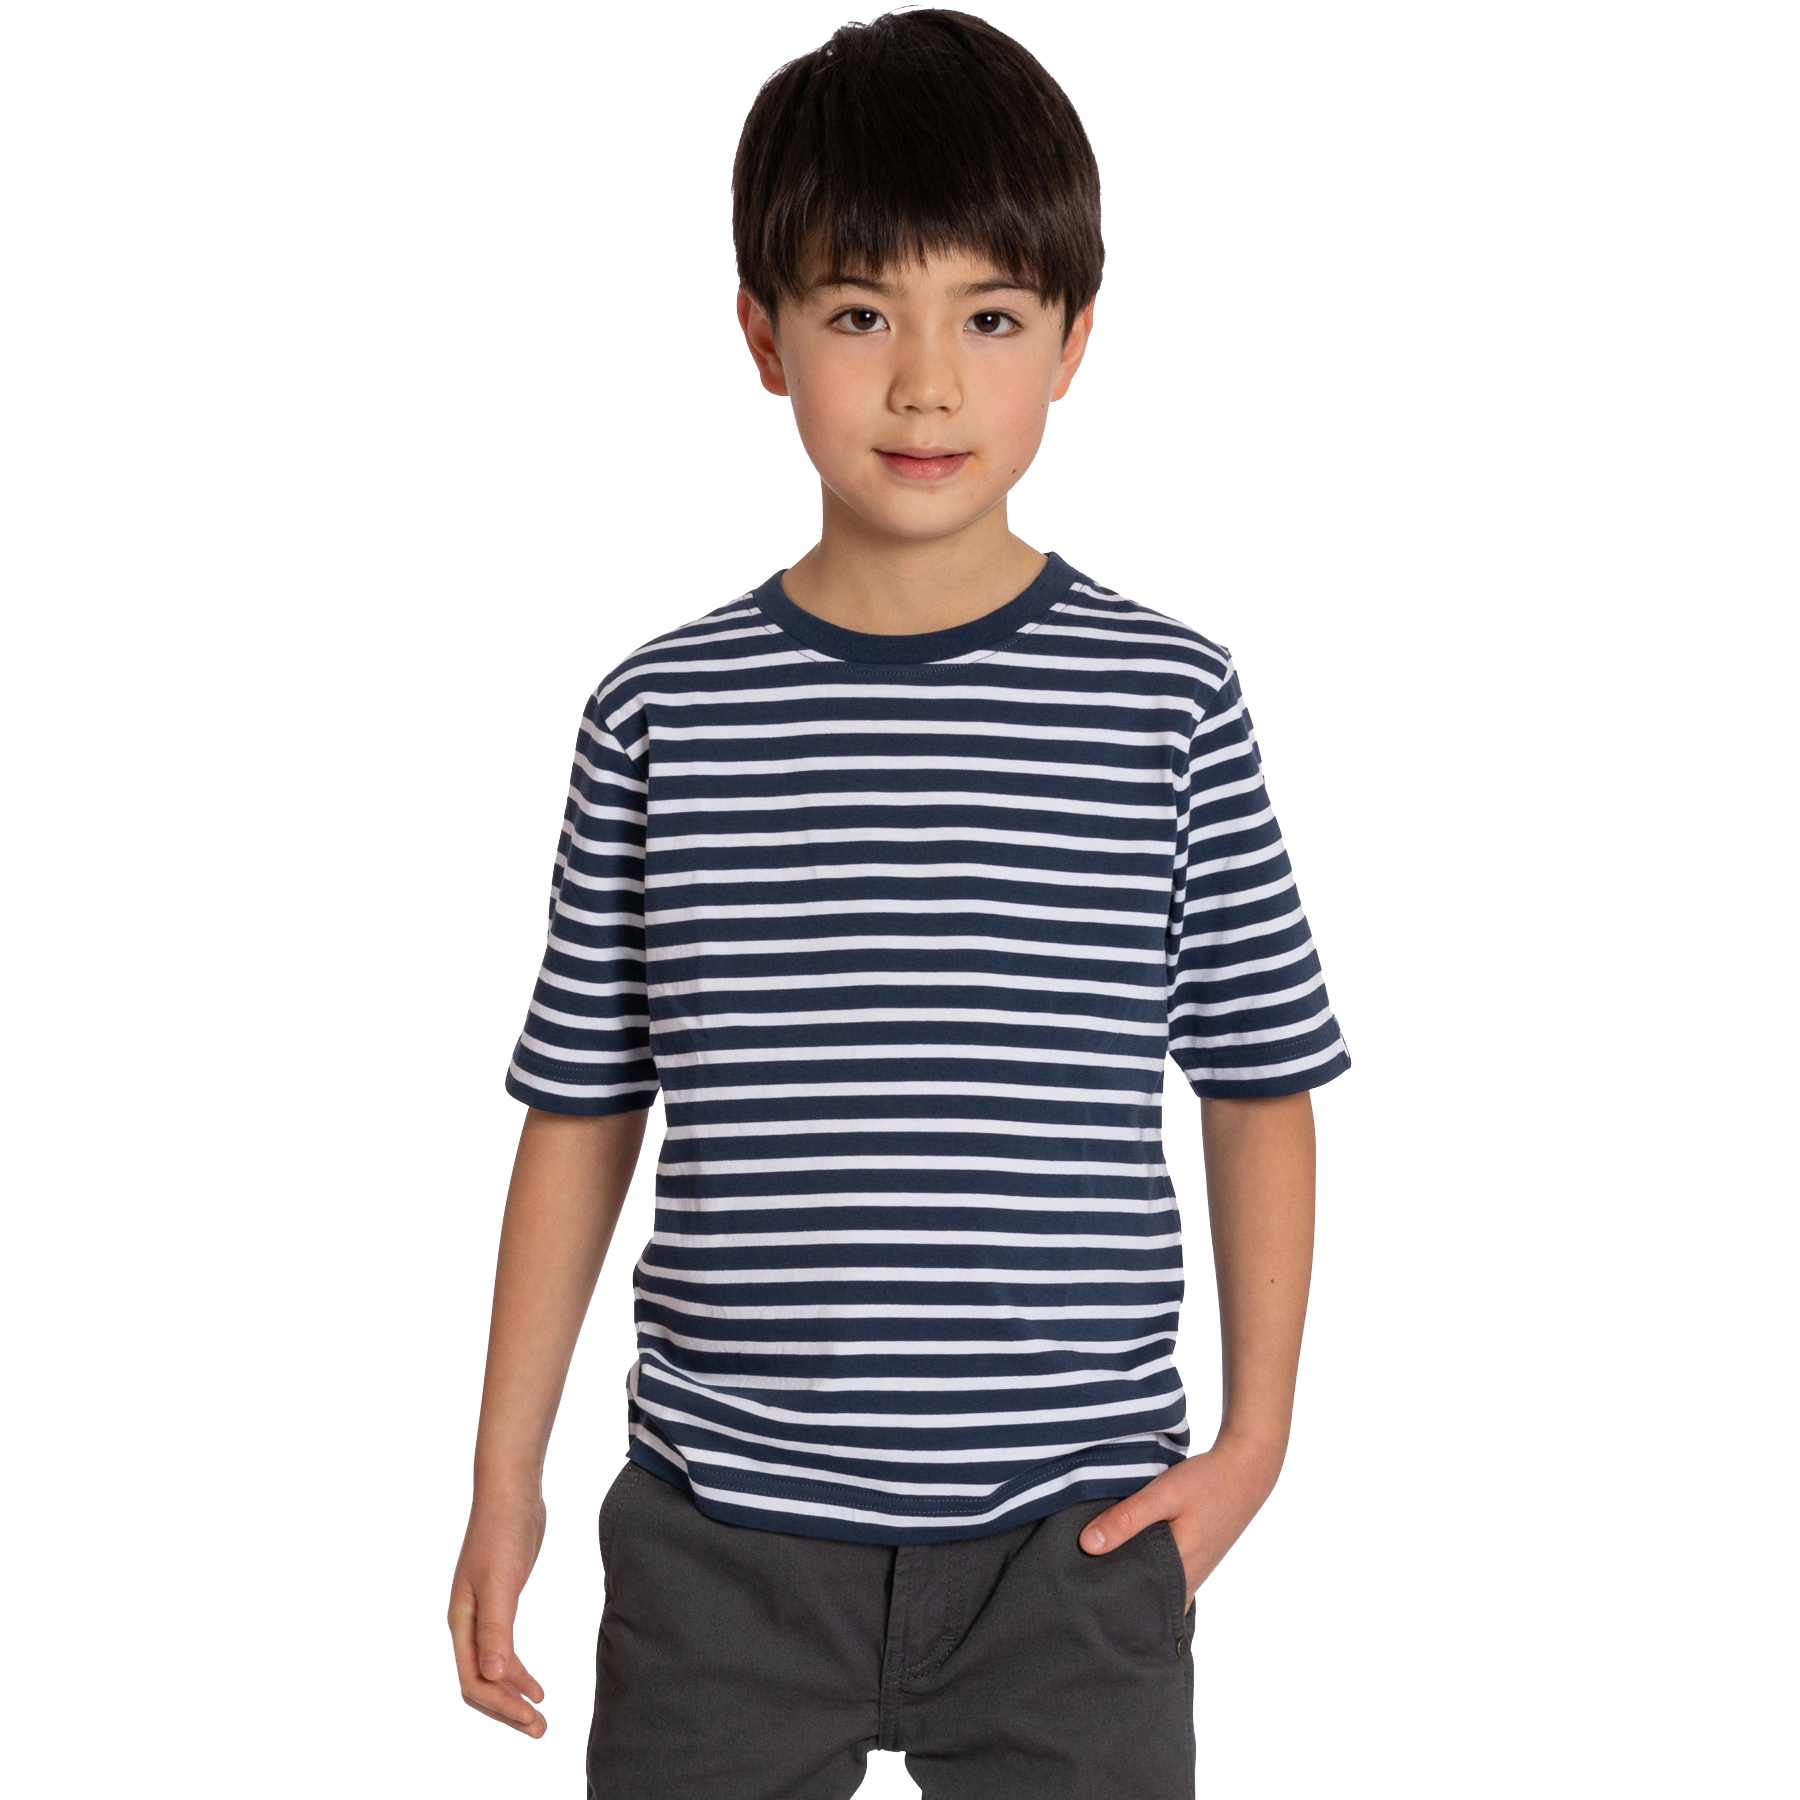 Produktbild von Elkline HANNES T-Shirt Kinder - darkblue - white